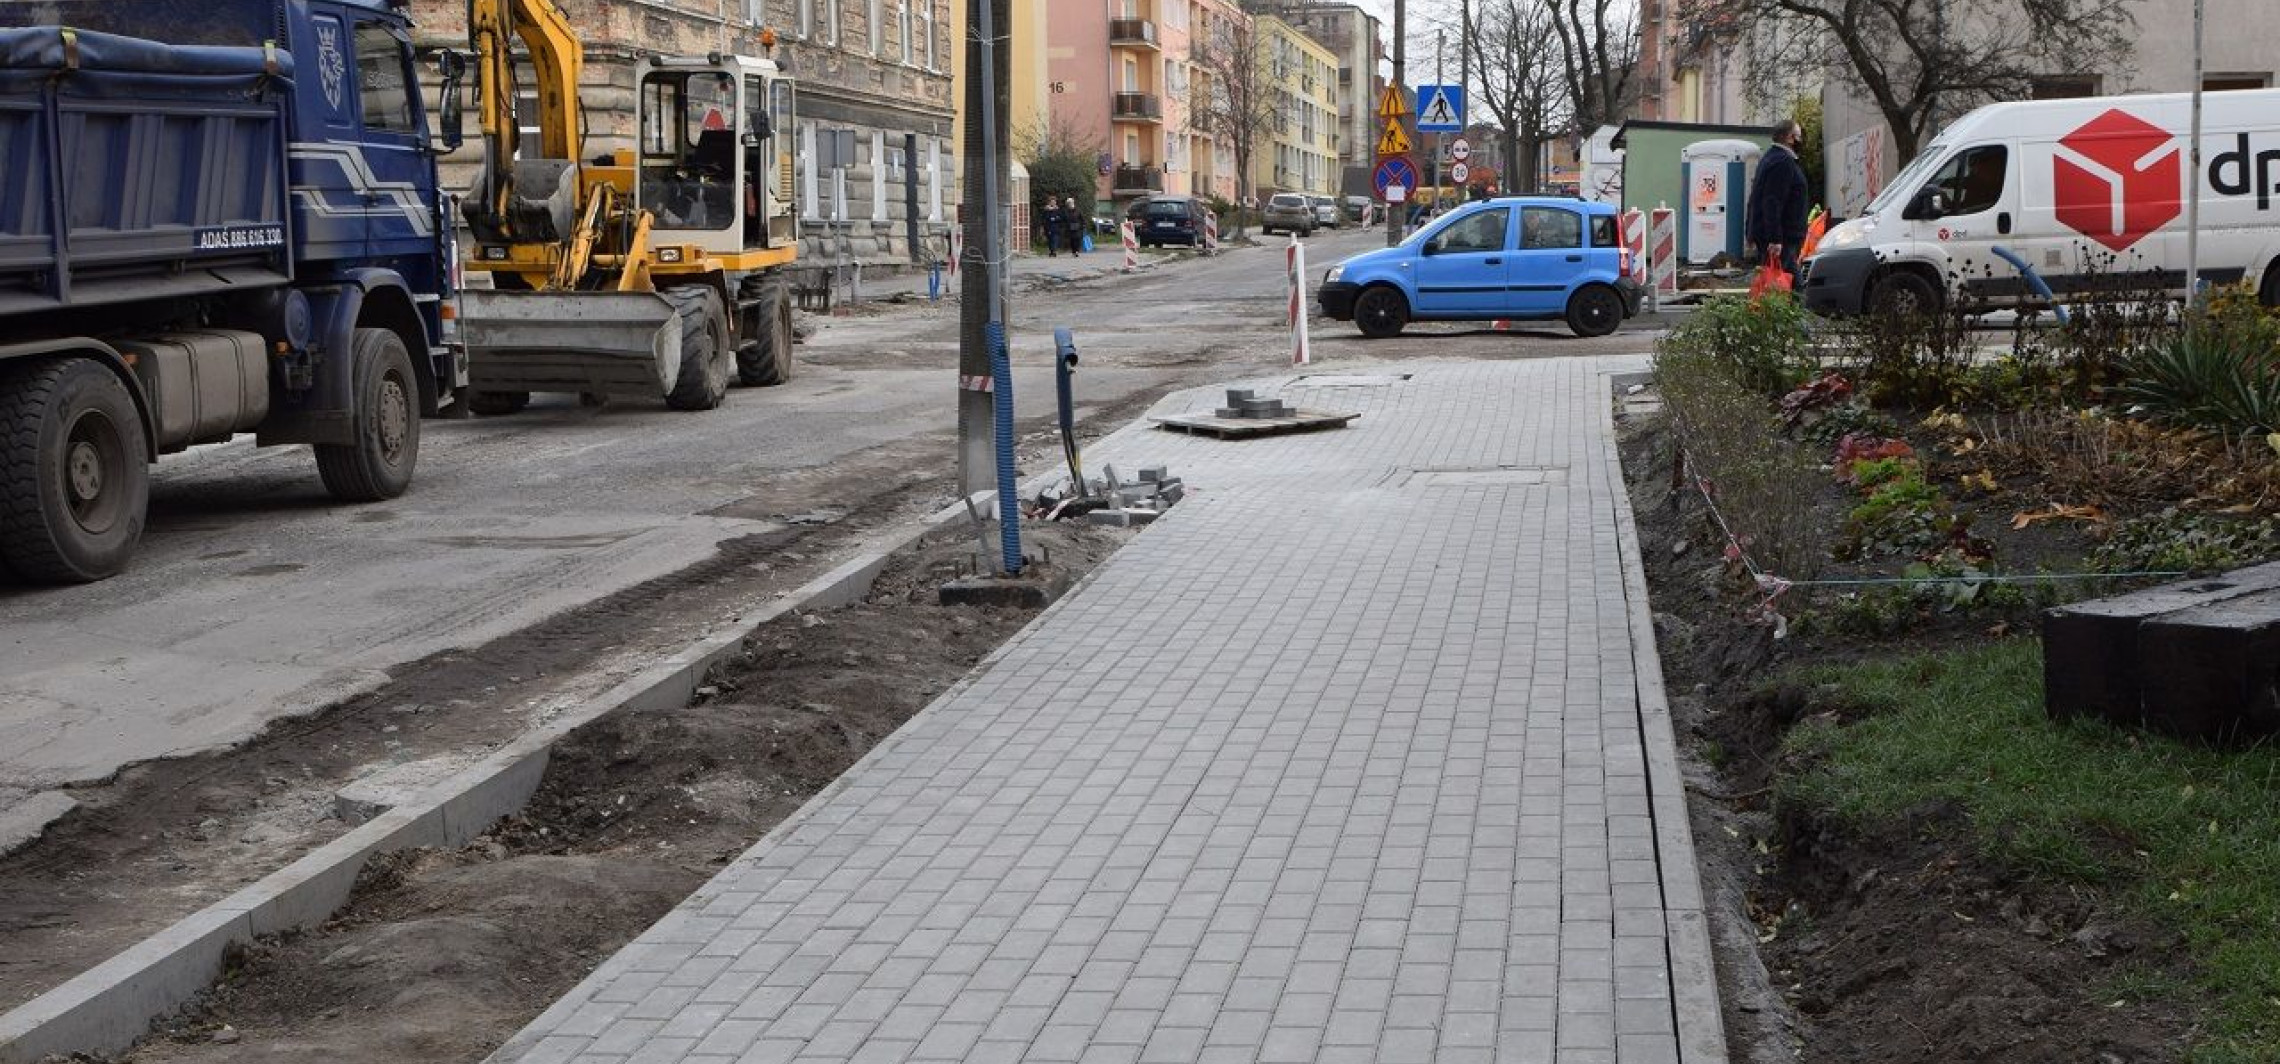 Inowrocław - W sobotę duże utrudnienia na remontowanej ulicy